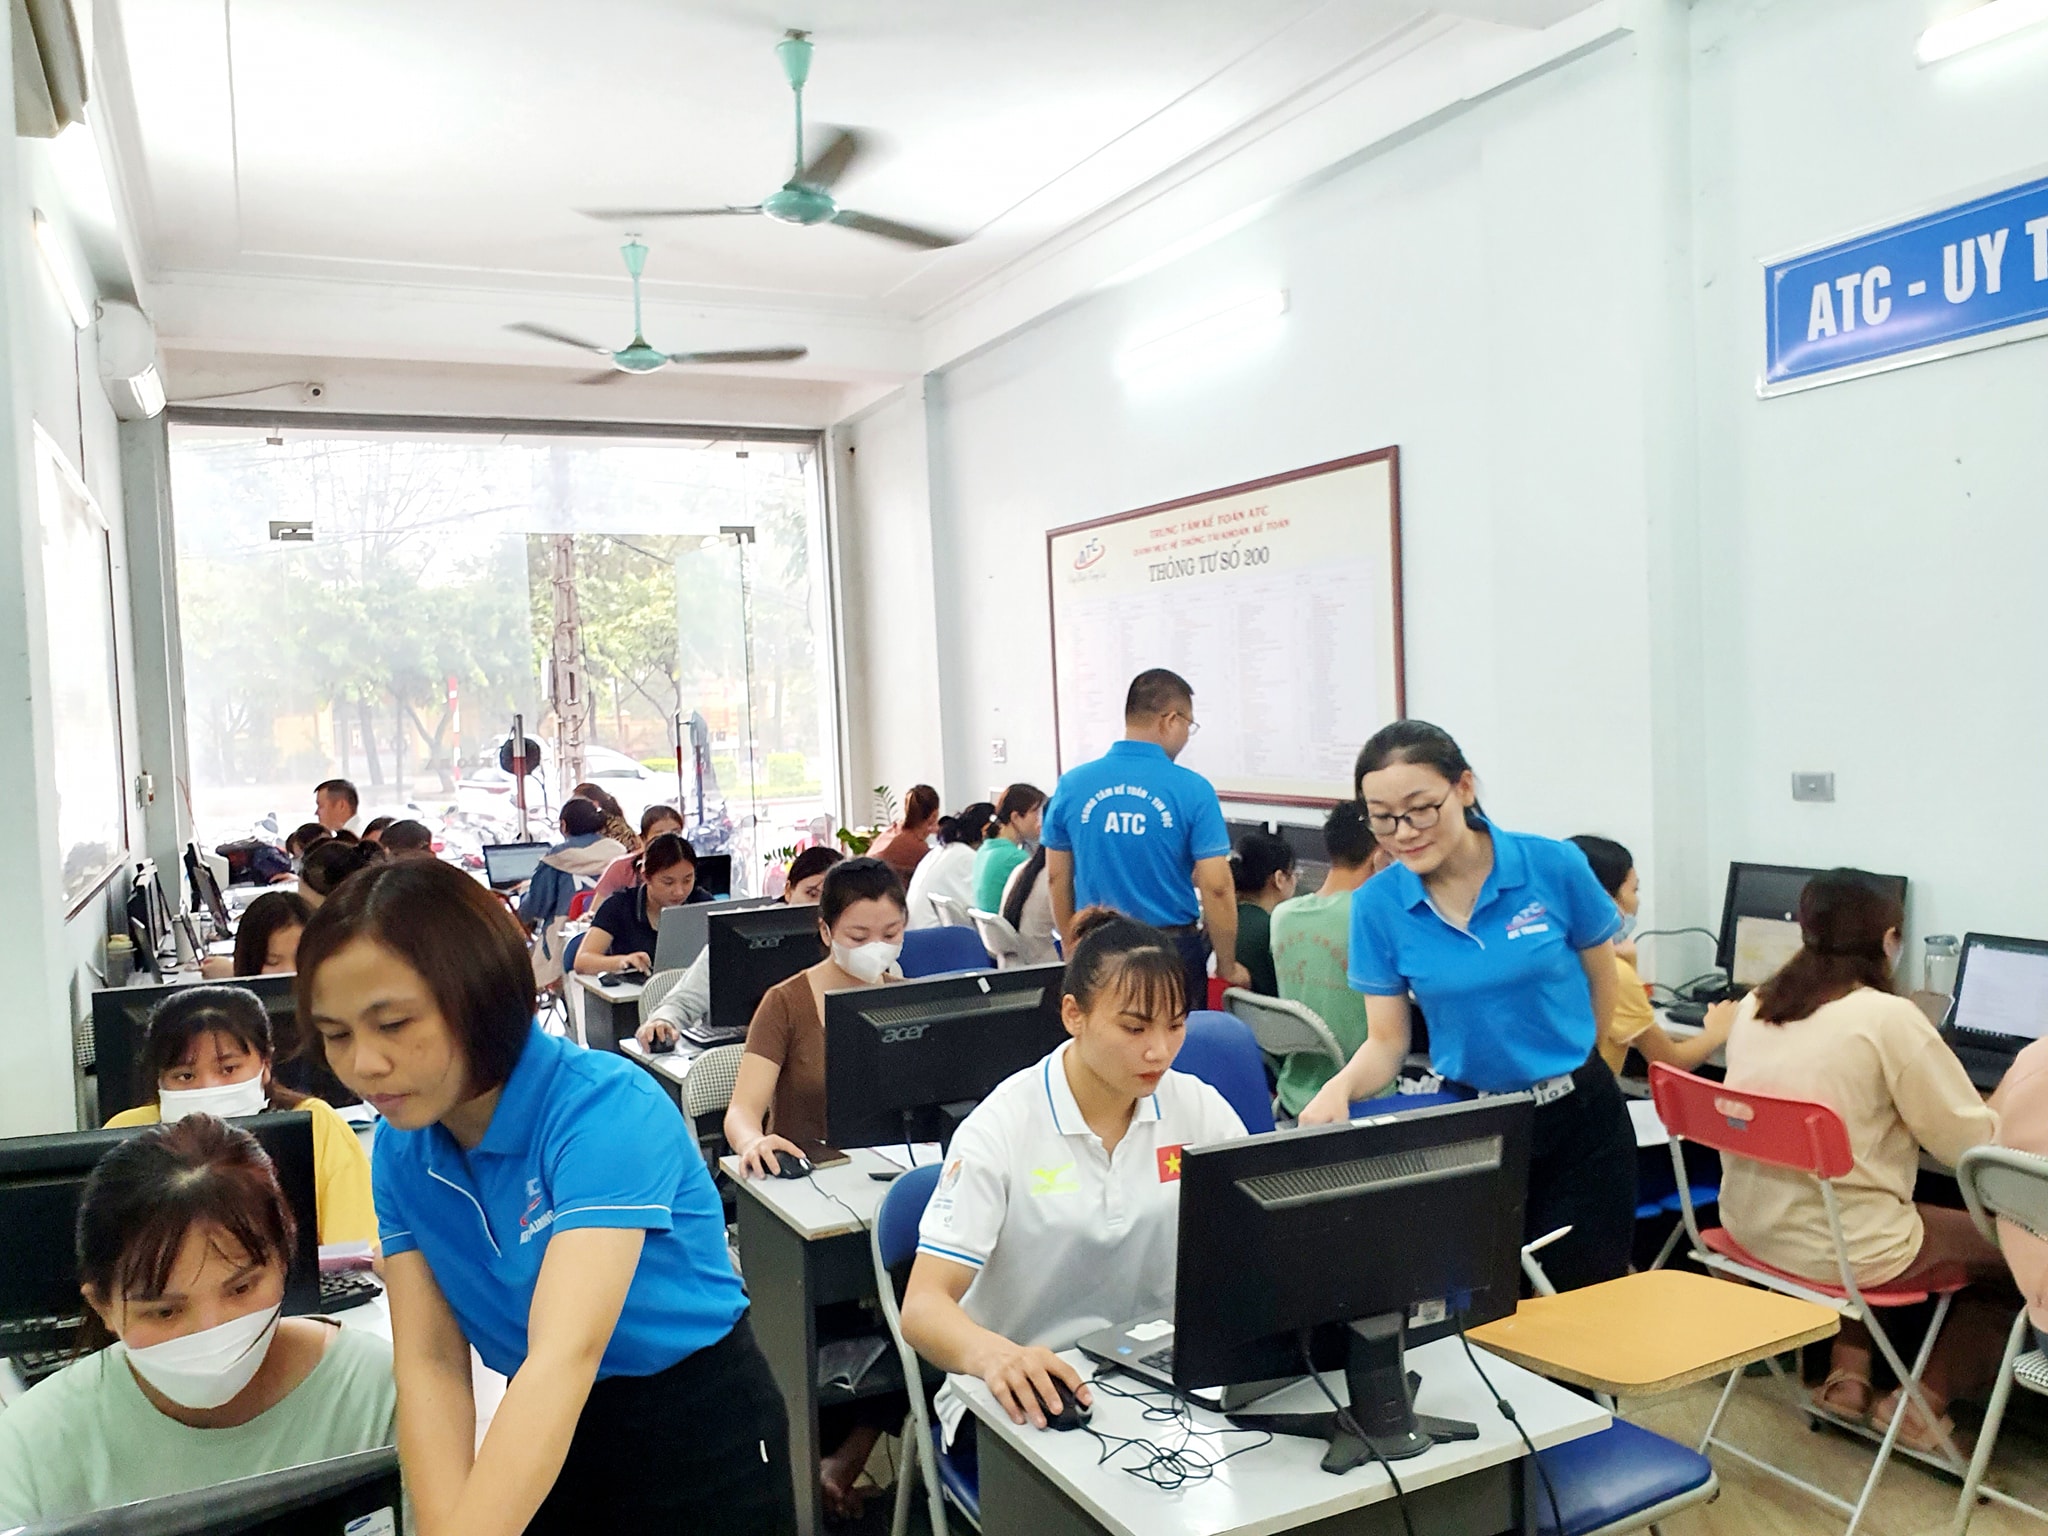 Trung tâm tin học văn phòng uy tín tại Thanh Hóa 